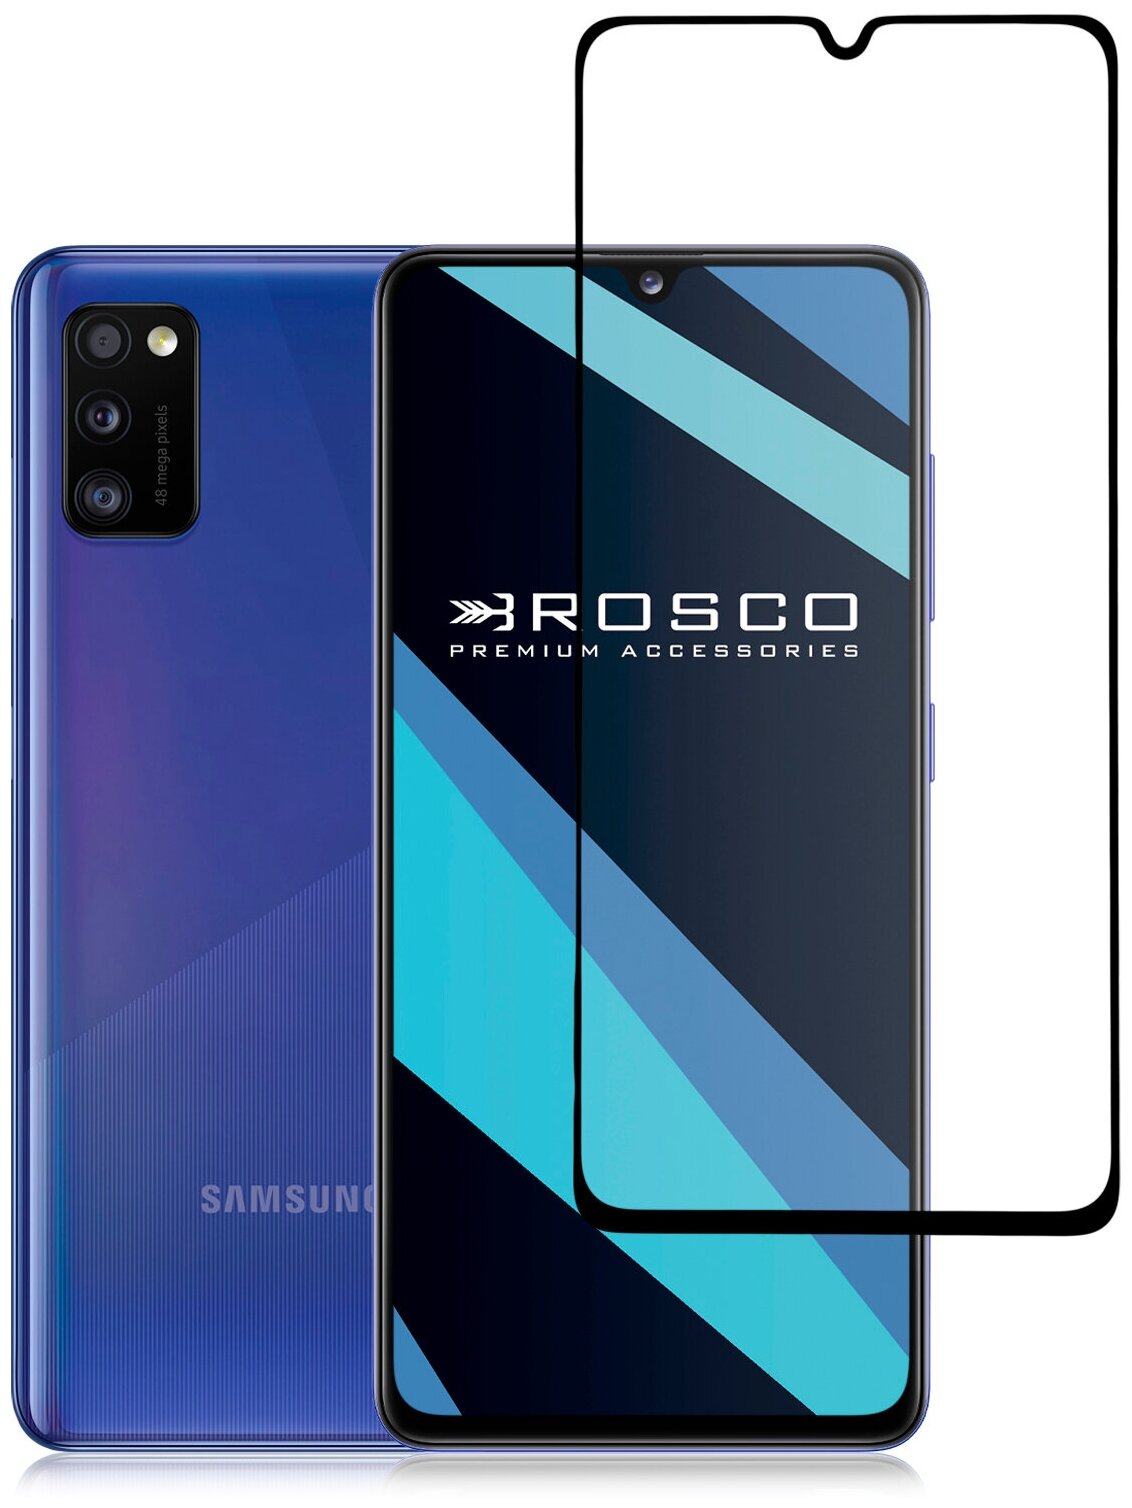 ROSCO/ Защитное стекло на Samsung Galaxy A41 (Самсунг Галакси А41, А 41). Высокопрочное, закалённое, олеофобное покрытие, черная рамка, легко наклеить